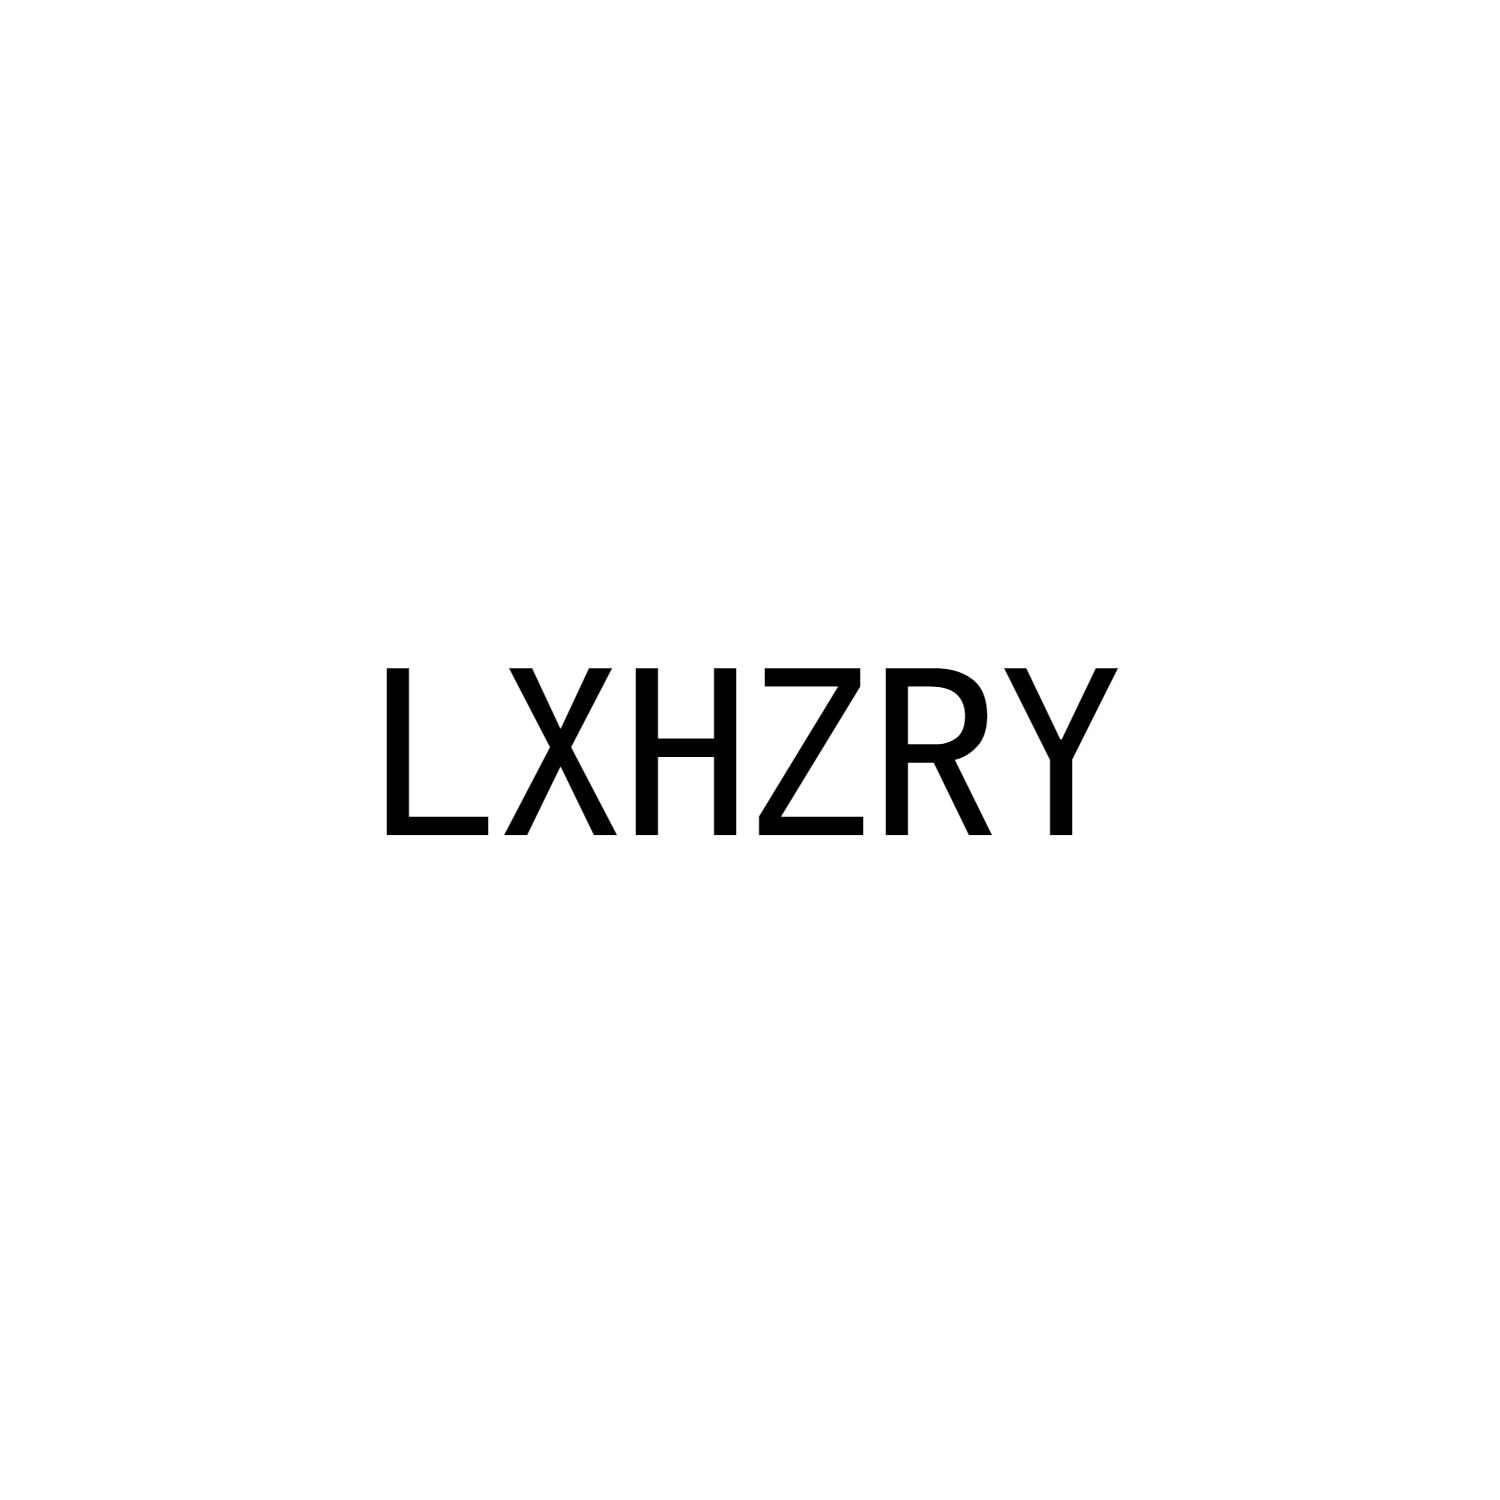 LXHZRY